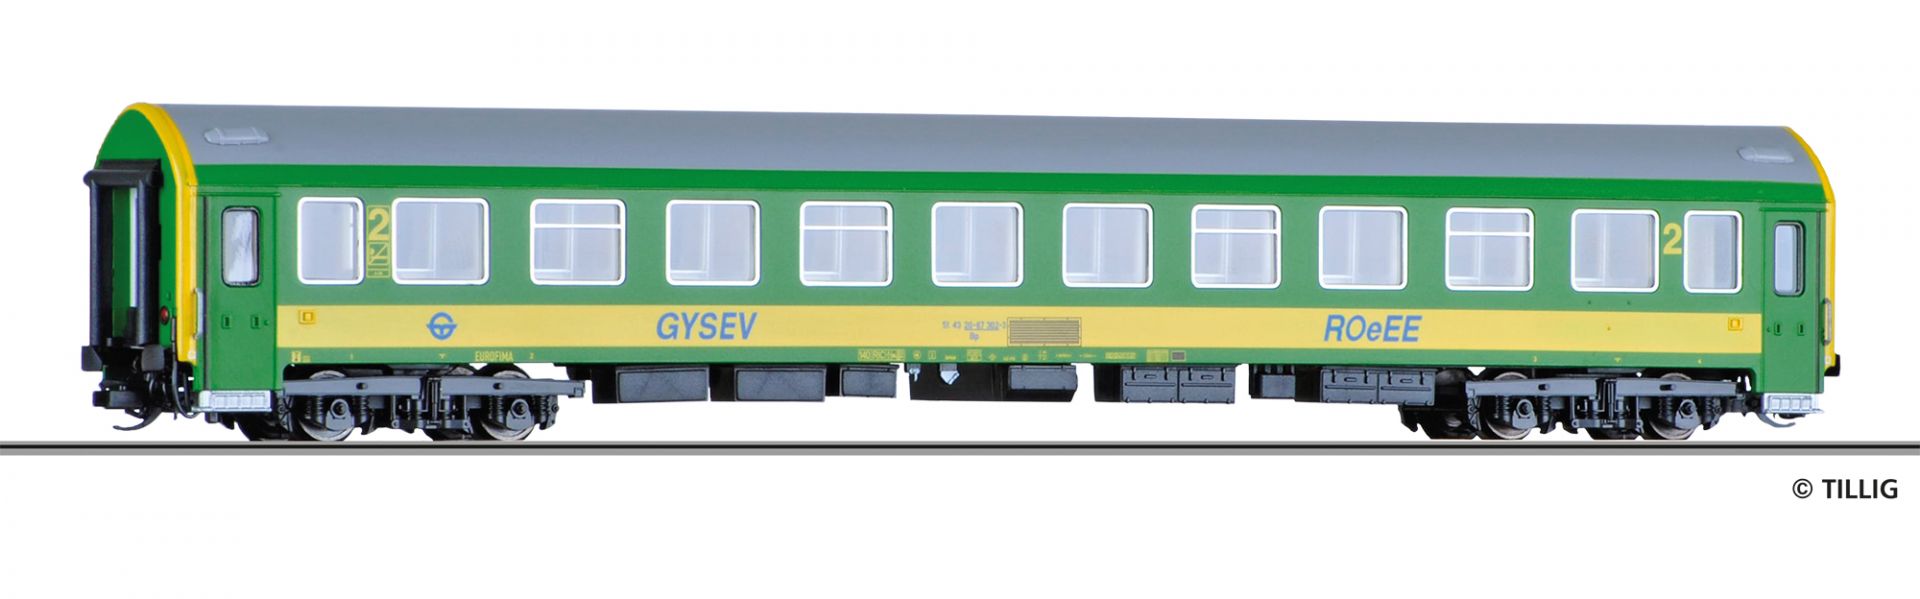 16689 | Reisezugwagen GYSEV